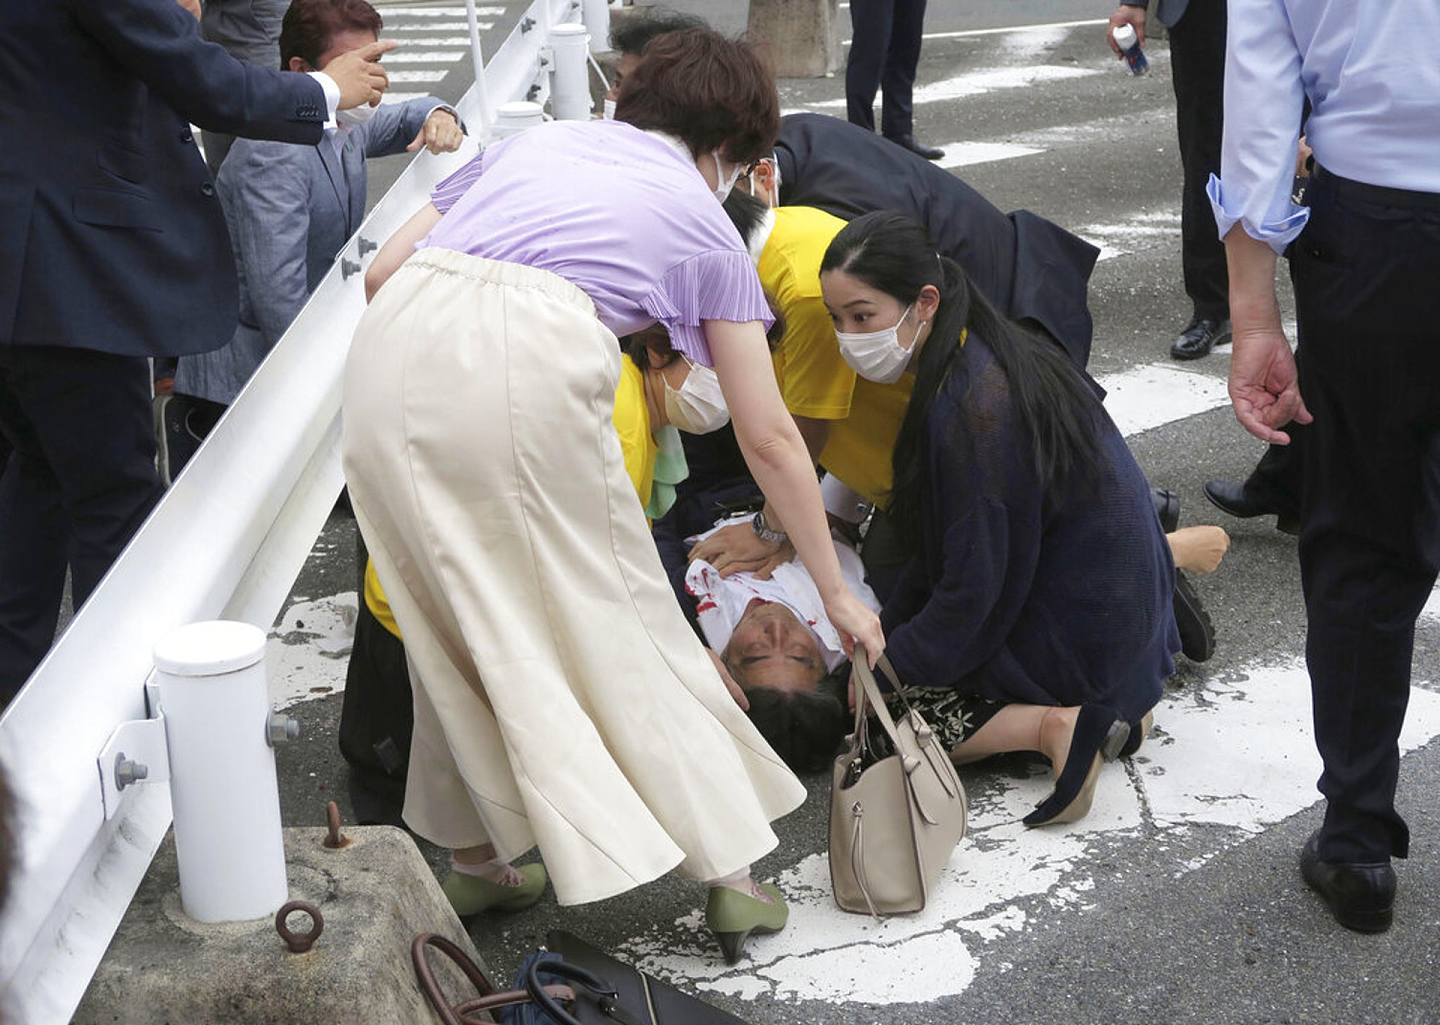 安倍晋三遇刺：2022年7月8日，日本前首相安倍晋三在奈良近铁大和西大寺站进行街头演说时遭人枪击，处于心肺停止状态。 事发时，现场约有30人。 图为安倍中枪倒地后的照片，可见他衬衣左胸位置有大片血迹。 （AP）